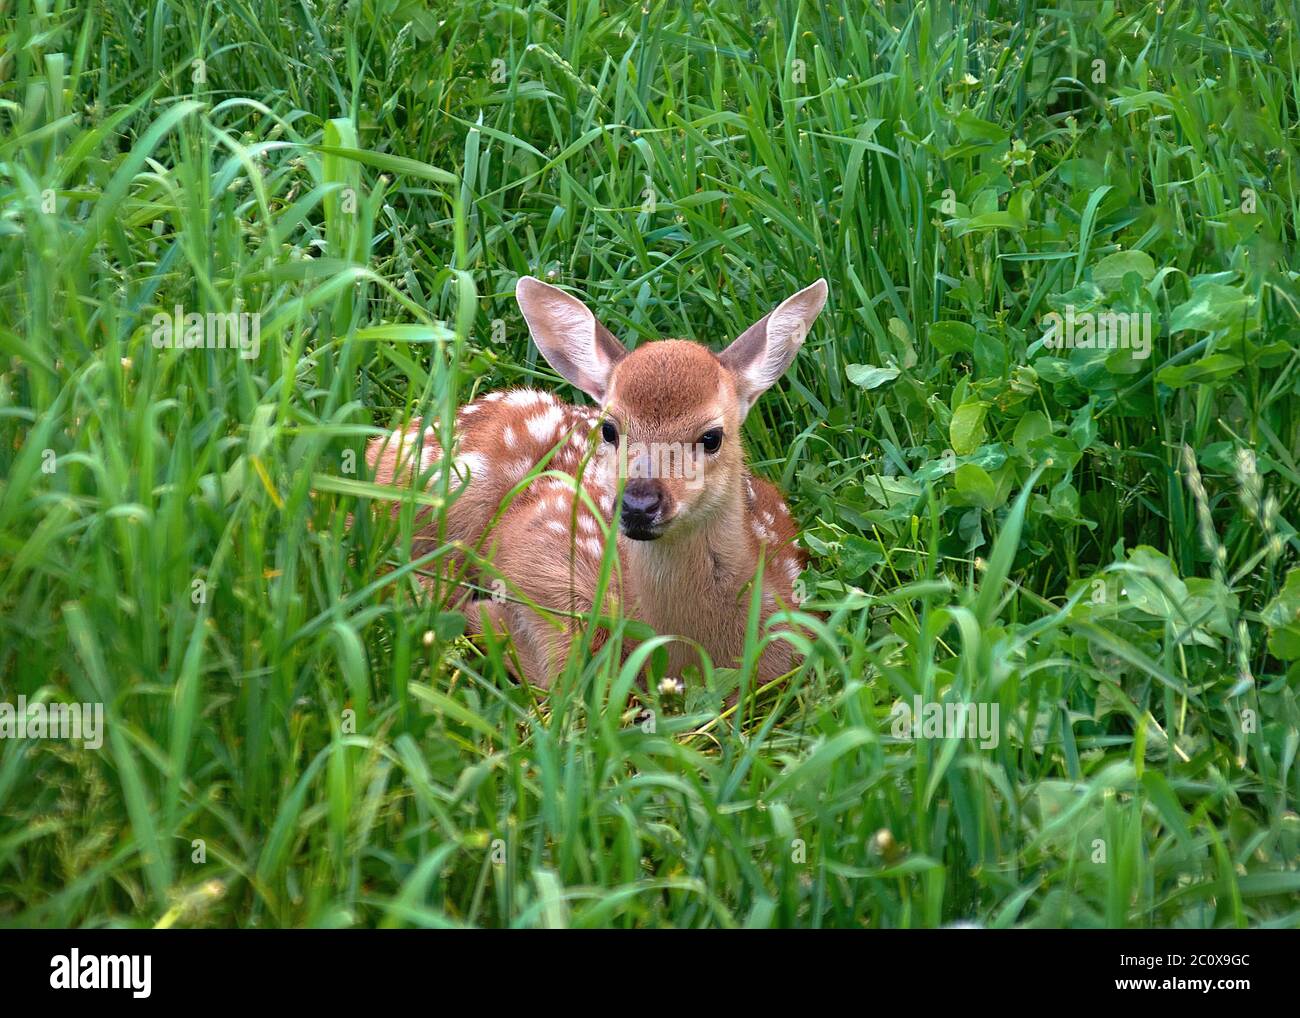 Il cervo cucito dalla coda bianca si trova nel grass.focus sul animale Foto Stock